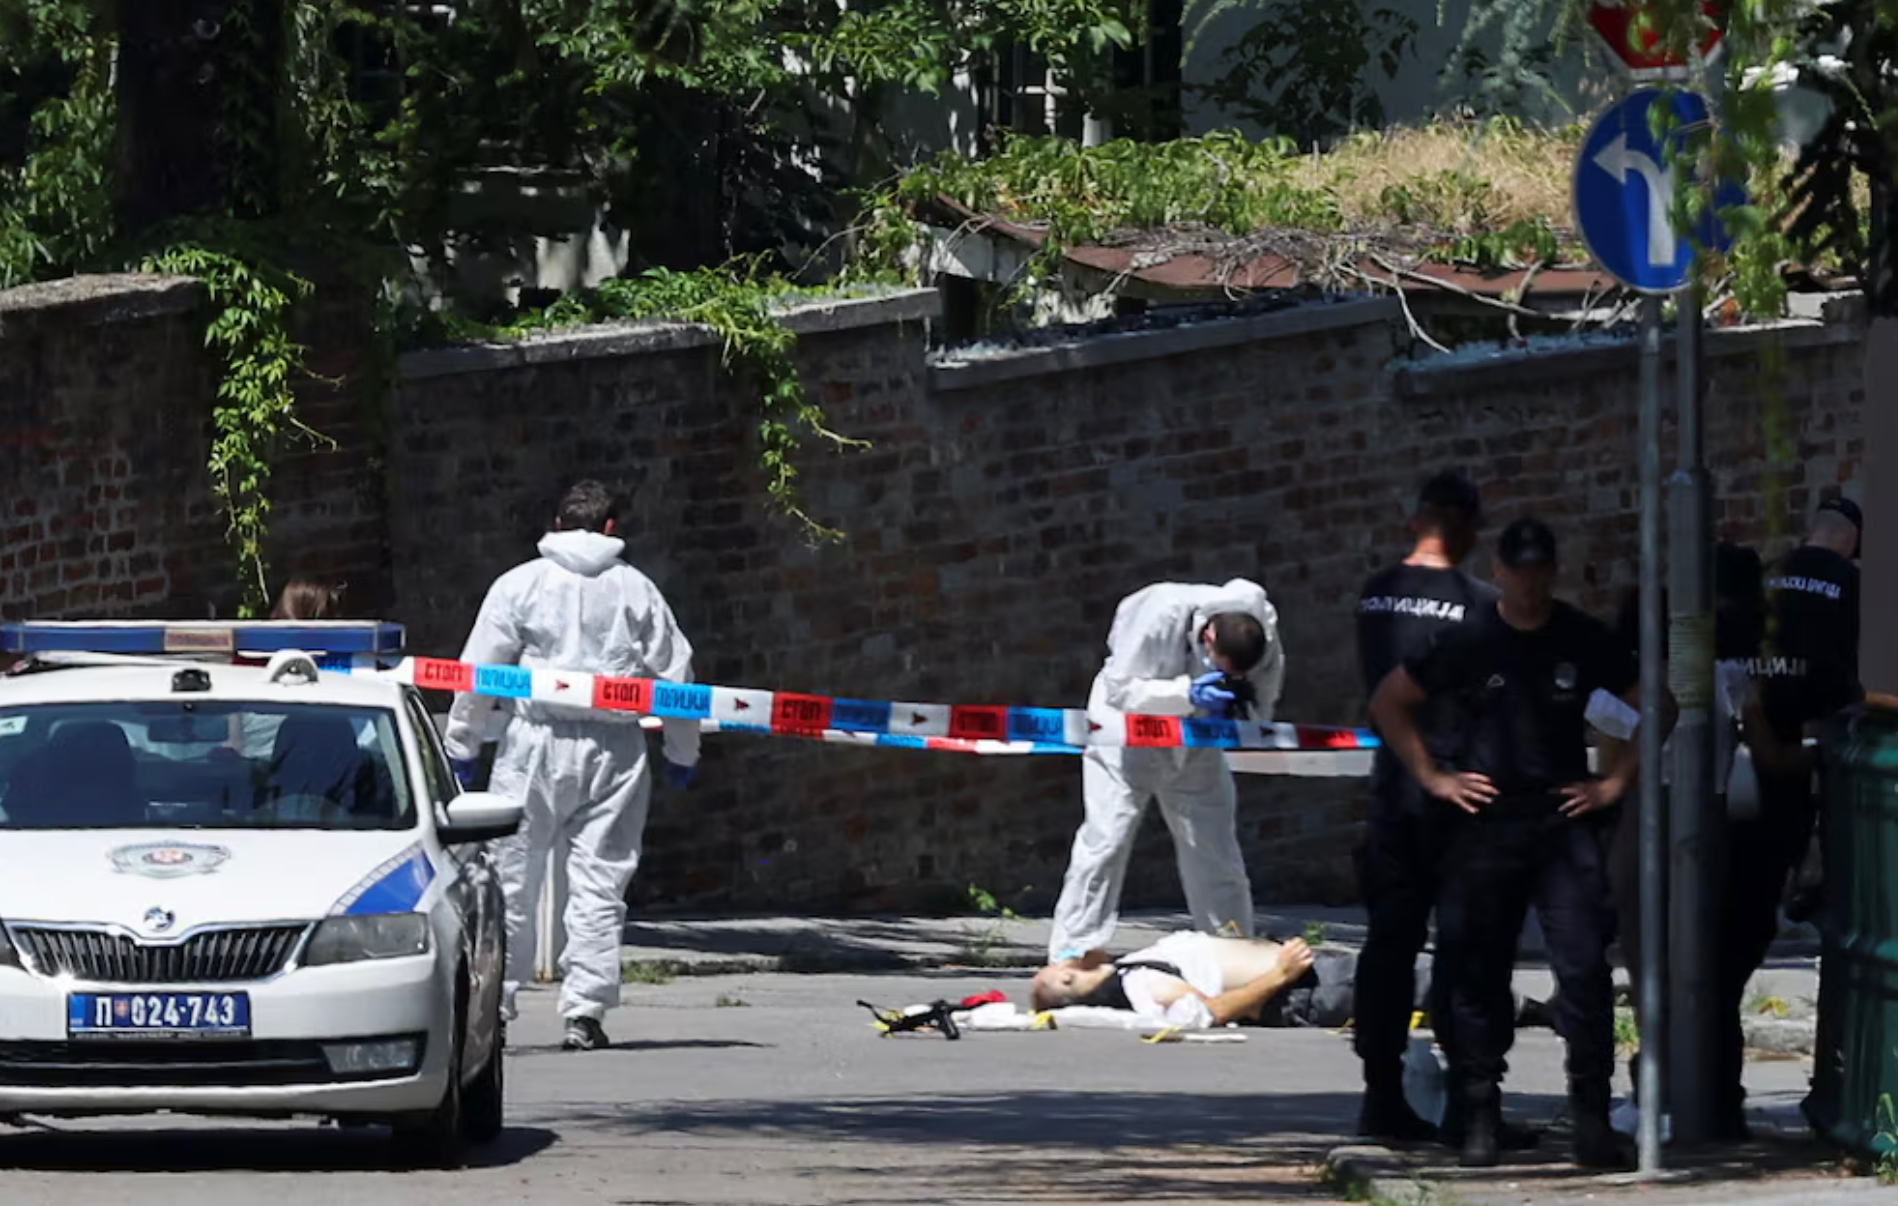 Мужчина ранил в Белграде охранявшего посольство Израиля полицейского из арбалета. Тот застрелил его в ответ